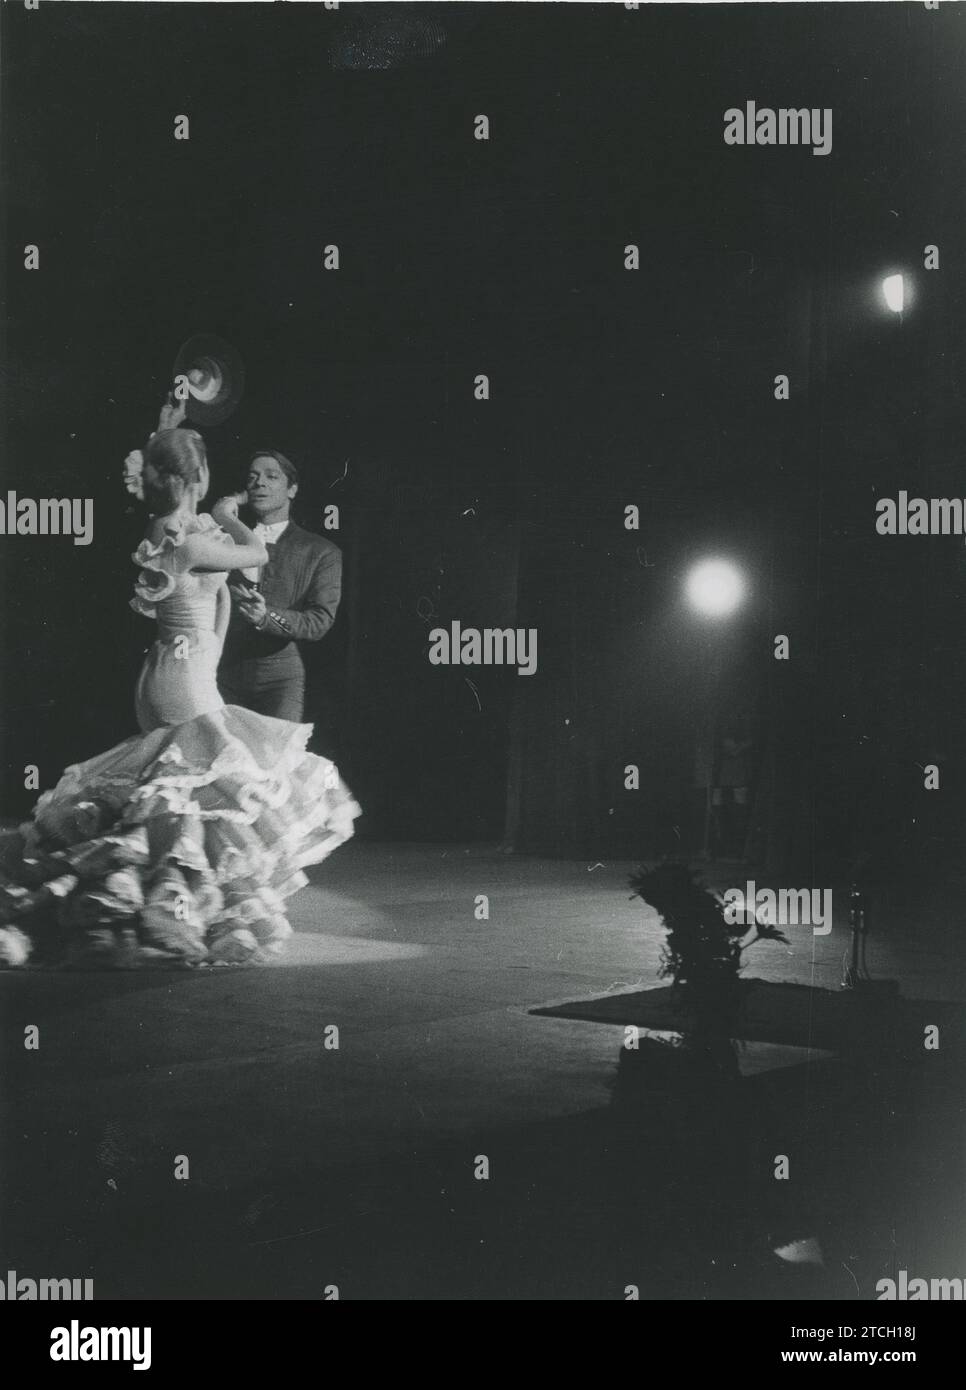 Madrid, Dezember 1961. Festival im Calderón. Auf dem Bild, Antonio und Marisol während ihrer Aufführung. Quelle: Album / Archivo ABC / Teodoro Naranjo Domínguez Stockfoto